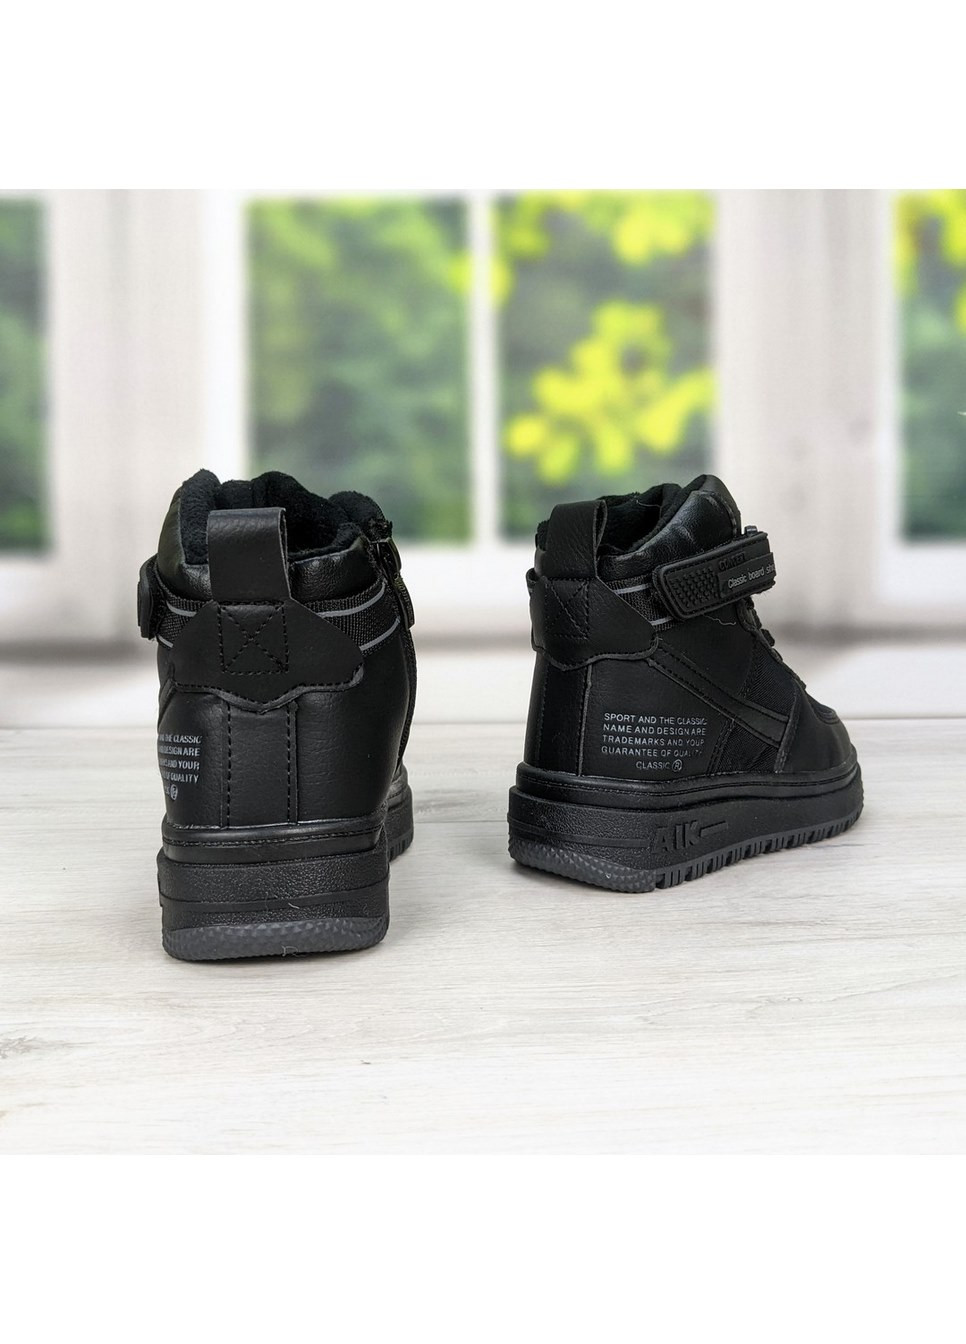 Черные повседневные зимние ботинки детские зимние спортивного плана для мальчика Jong Golf